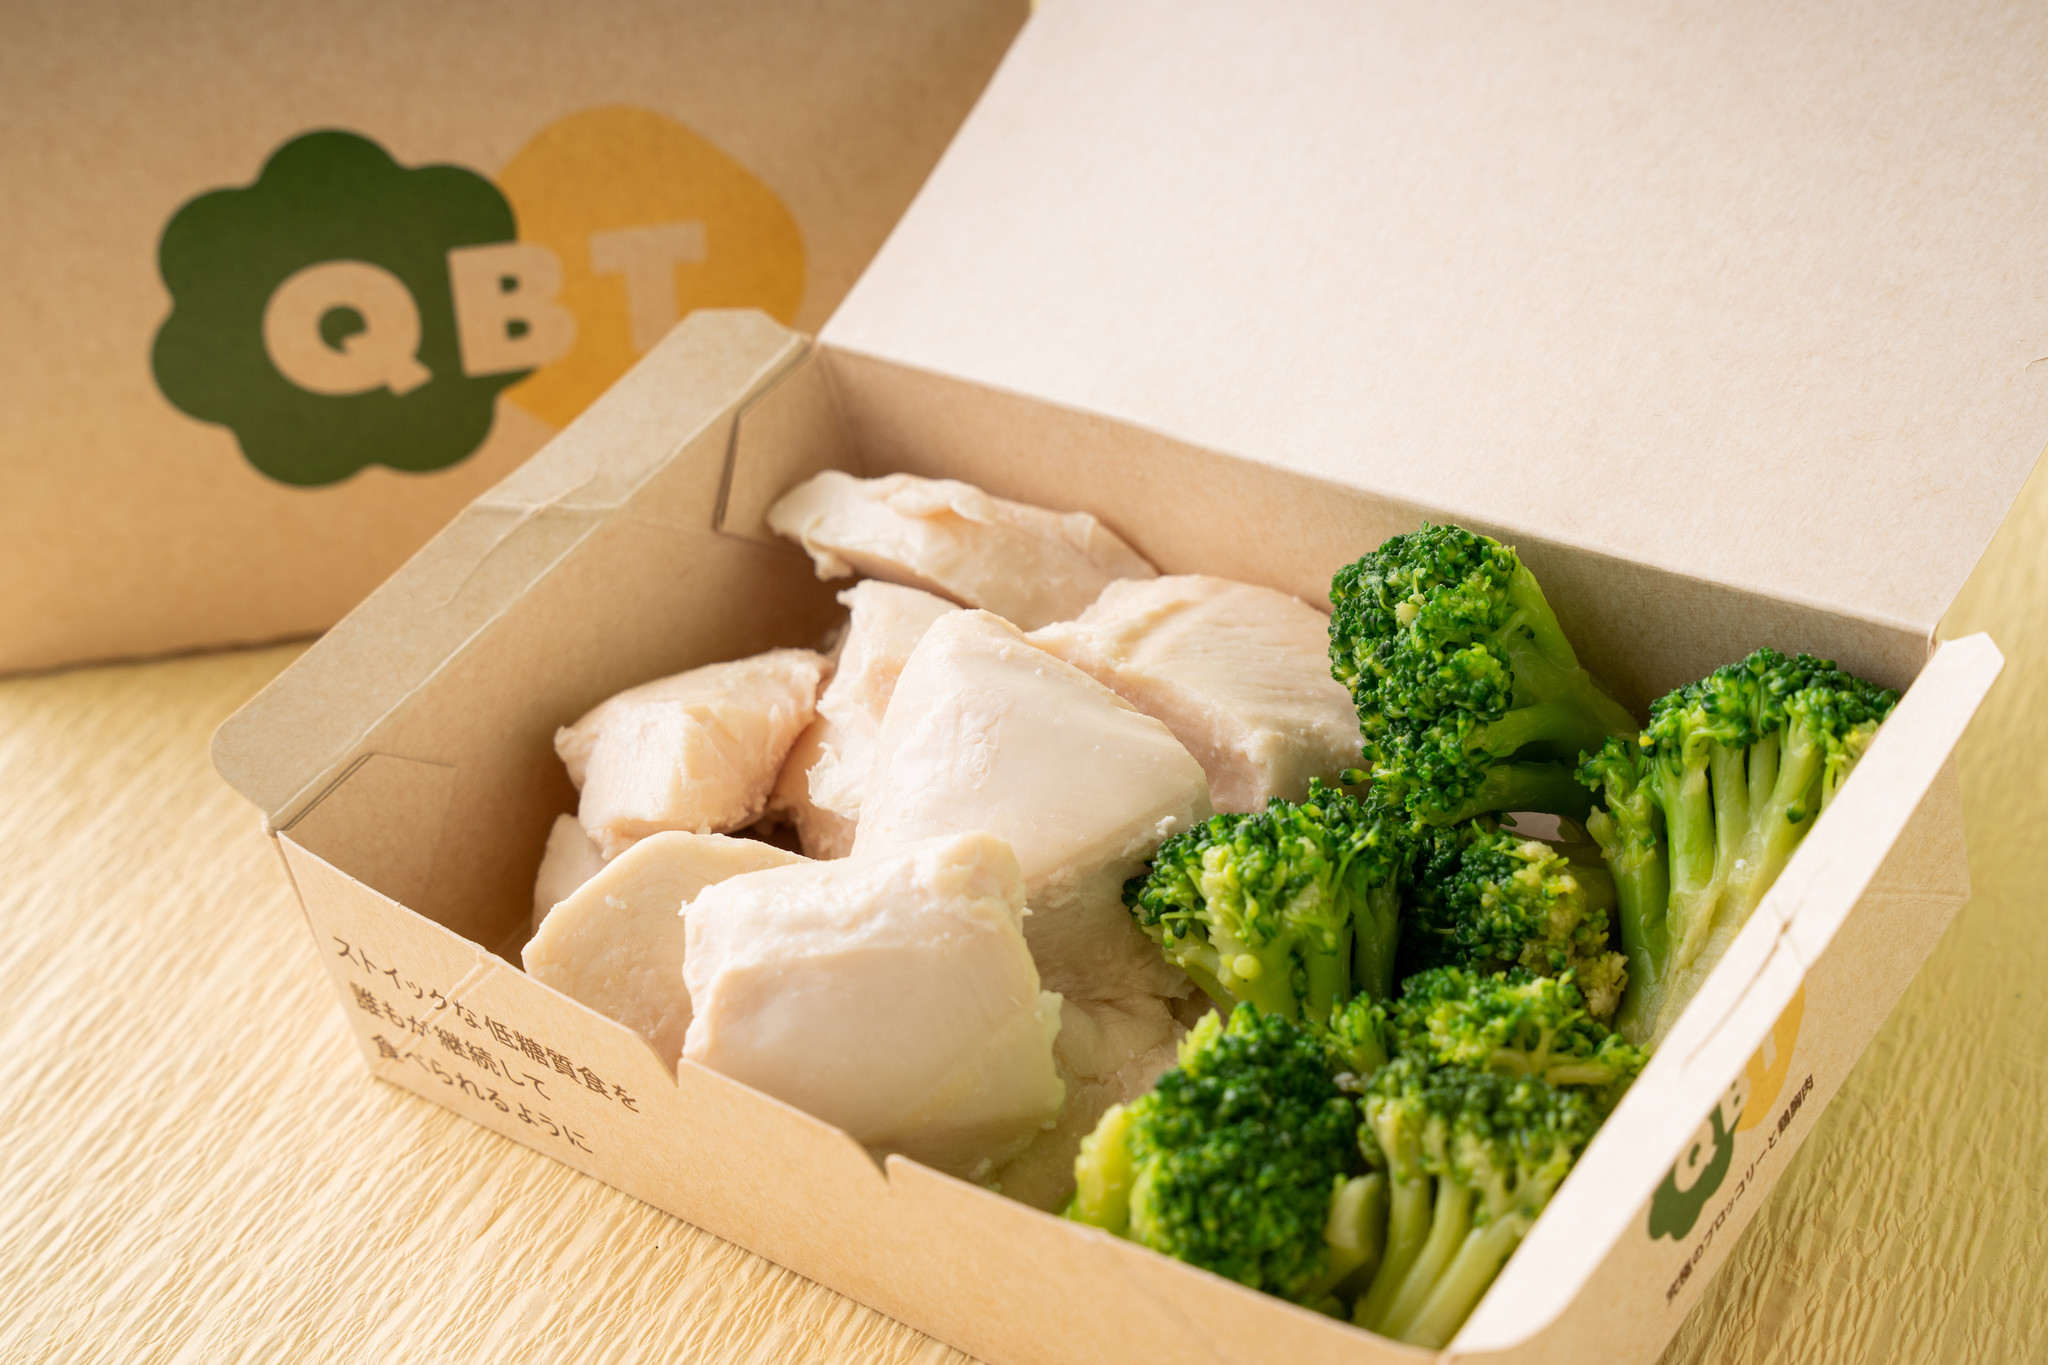 究極のブロッコリーと鶏胸肉 Fc加盟募集開始から1年で全国1店舗 累計提供万食を突破 株式会社dorayakiのプレスリリース